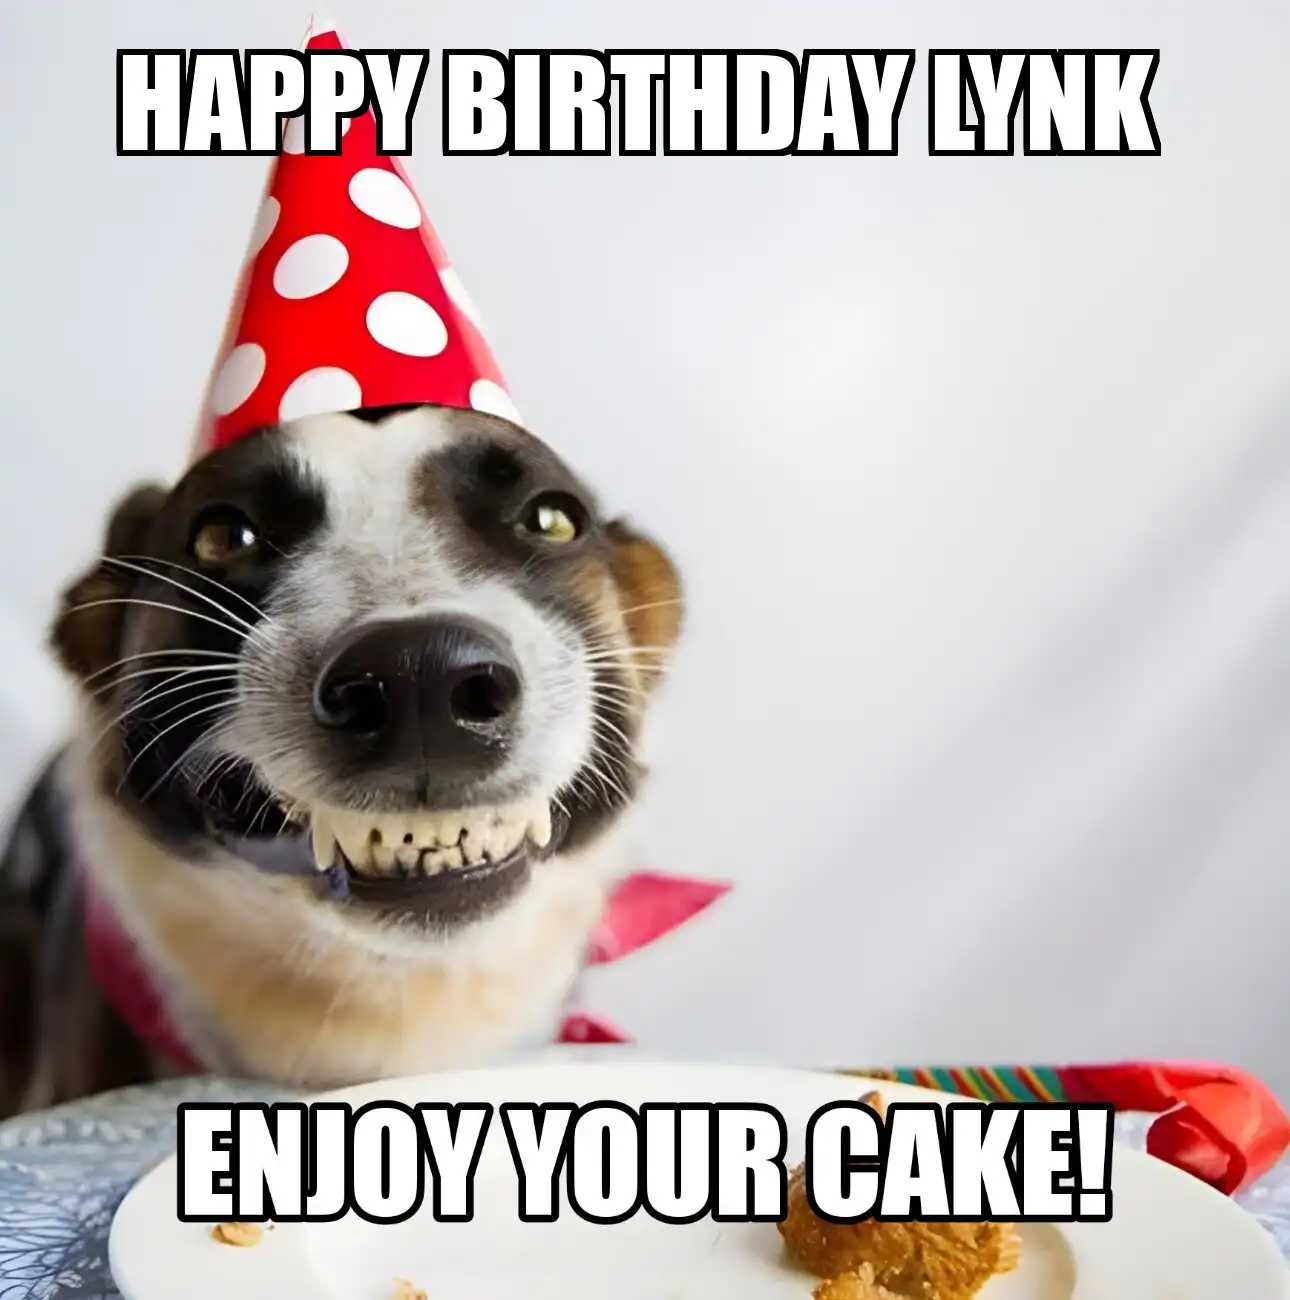 Happy Birthday Lynk Enjoy Your Cake Dog Meme